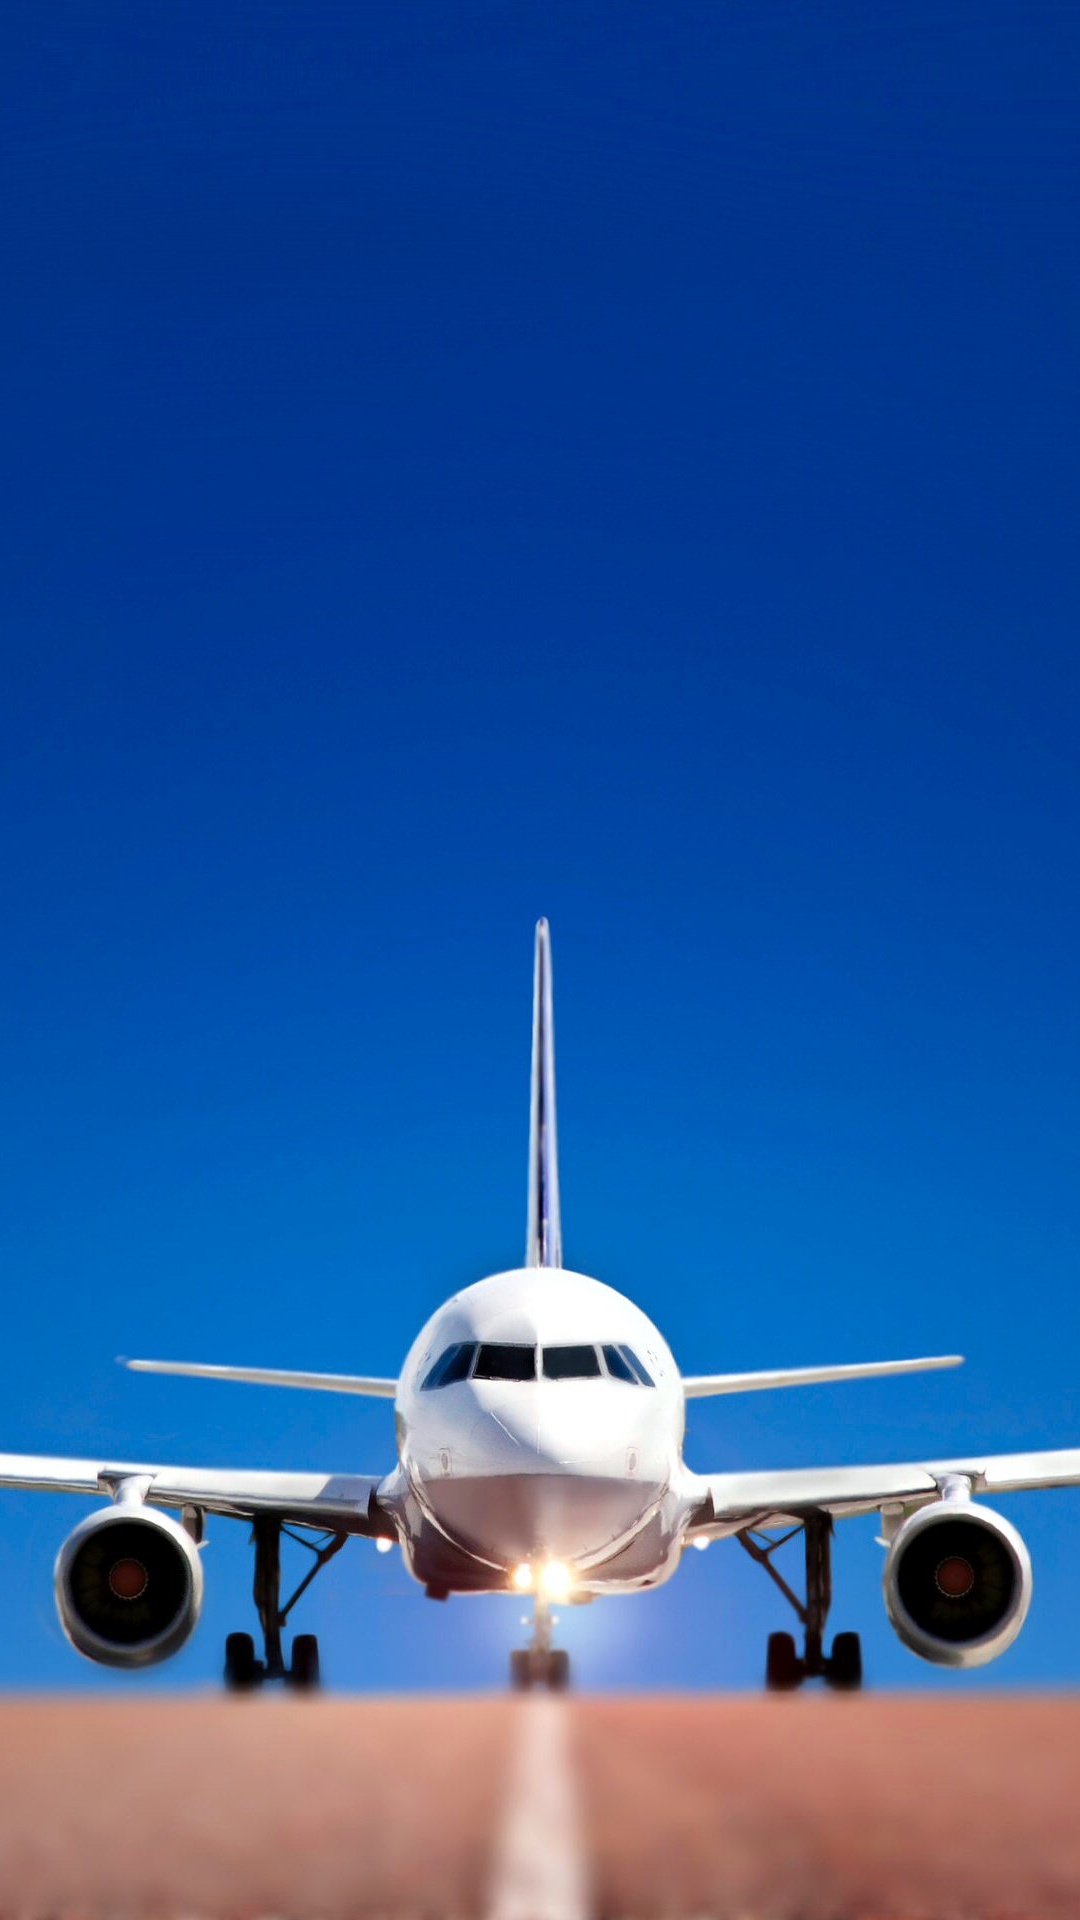 航空公司, 空中旅行, 航空, 客机, 航空航天工程 壁纸 1080x1920 允许